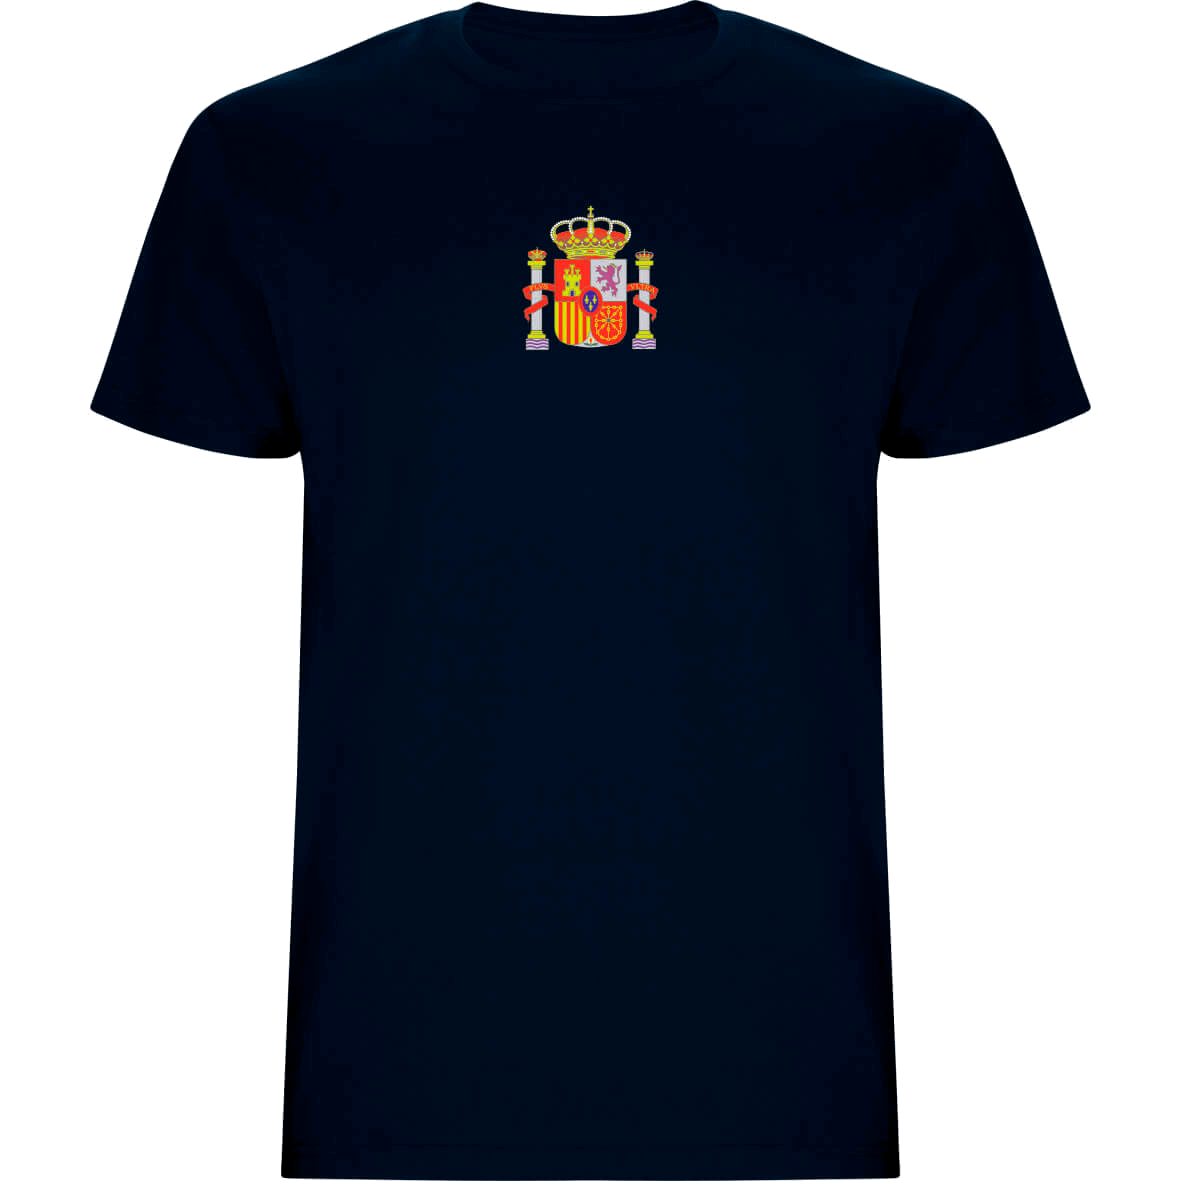 Camiseta España 2 caras TRASERA AZUL NAVY